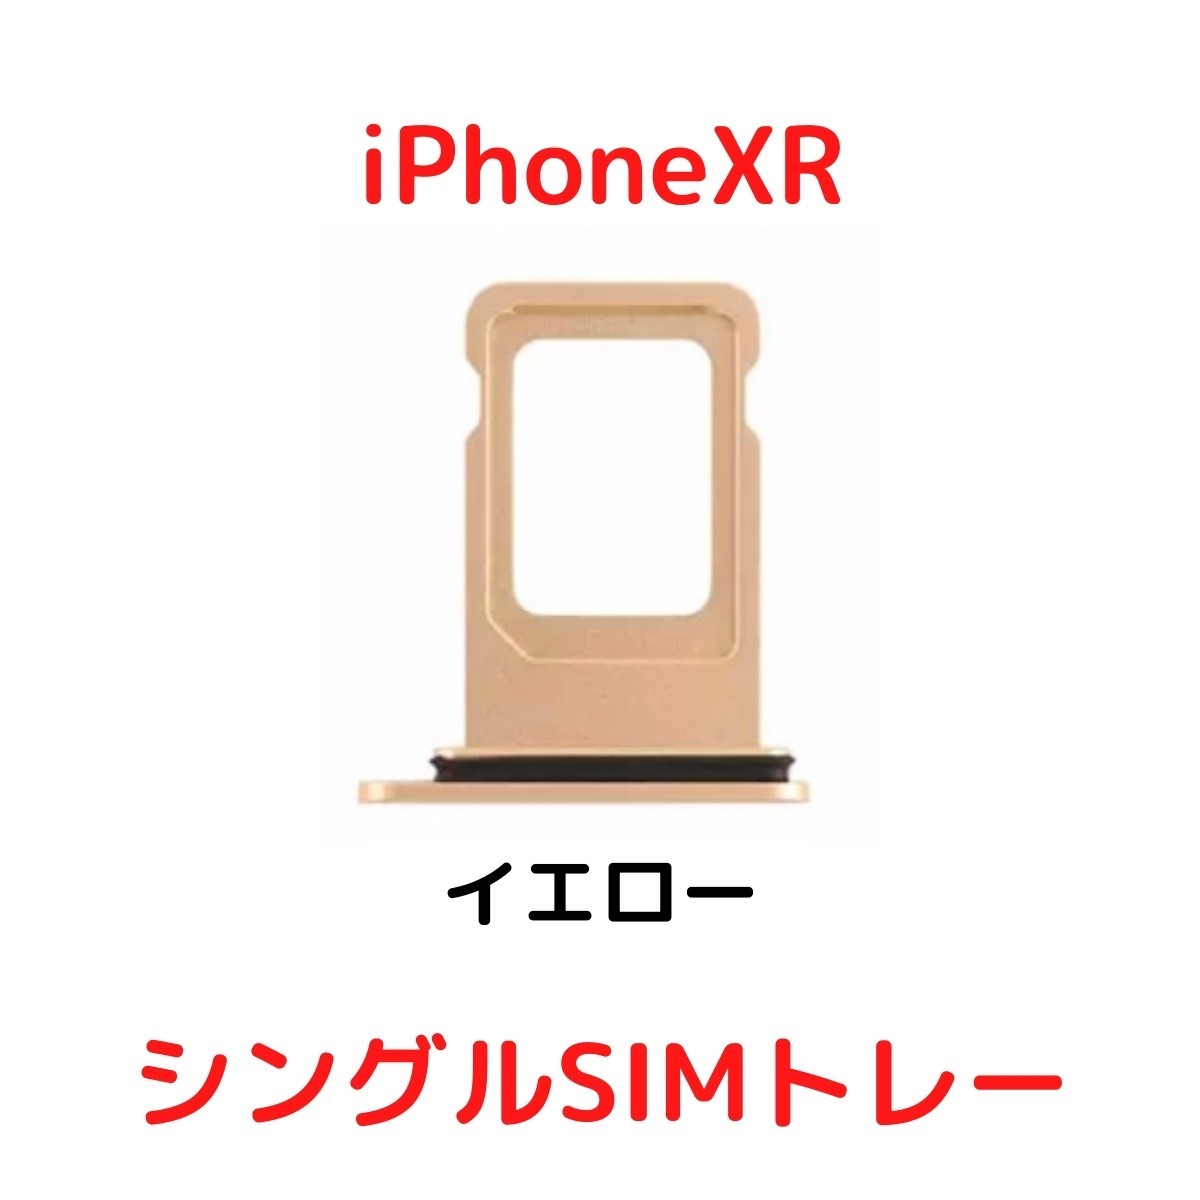 【選べる6色】 iPhoneXR レッド ブルー イエロー ブラック ホワイト コーラル シングルSIM 防水リング付き SIMトレー SIMスロット_画像5